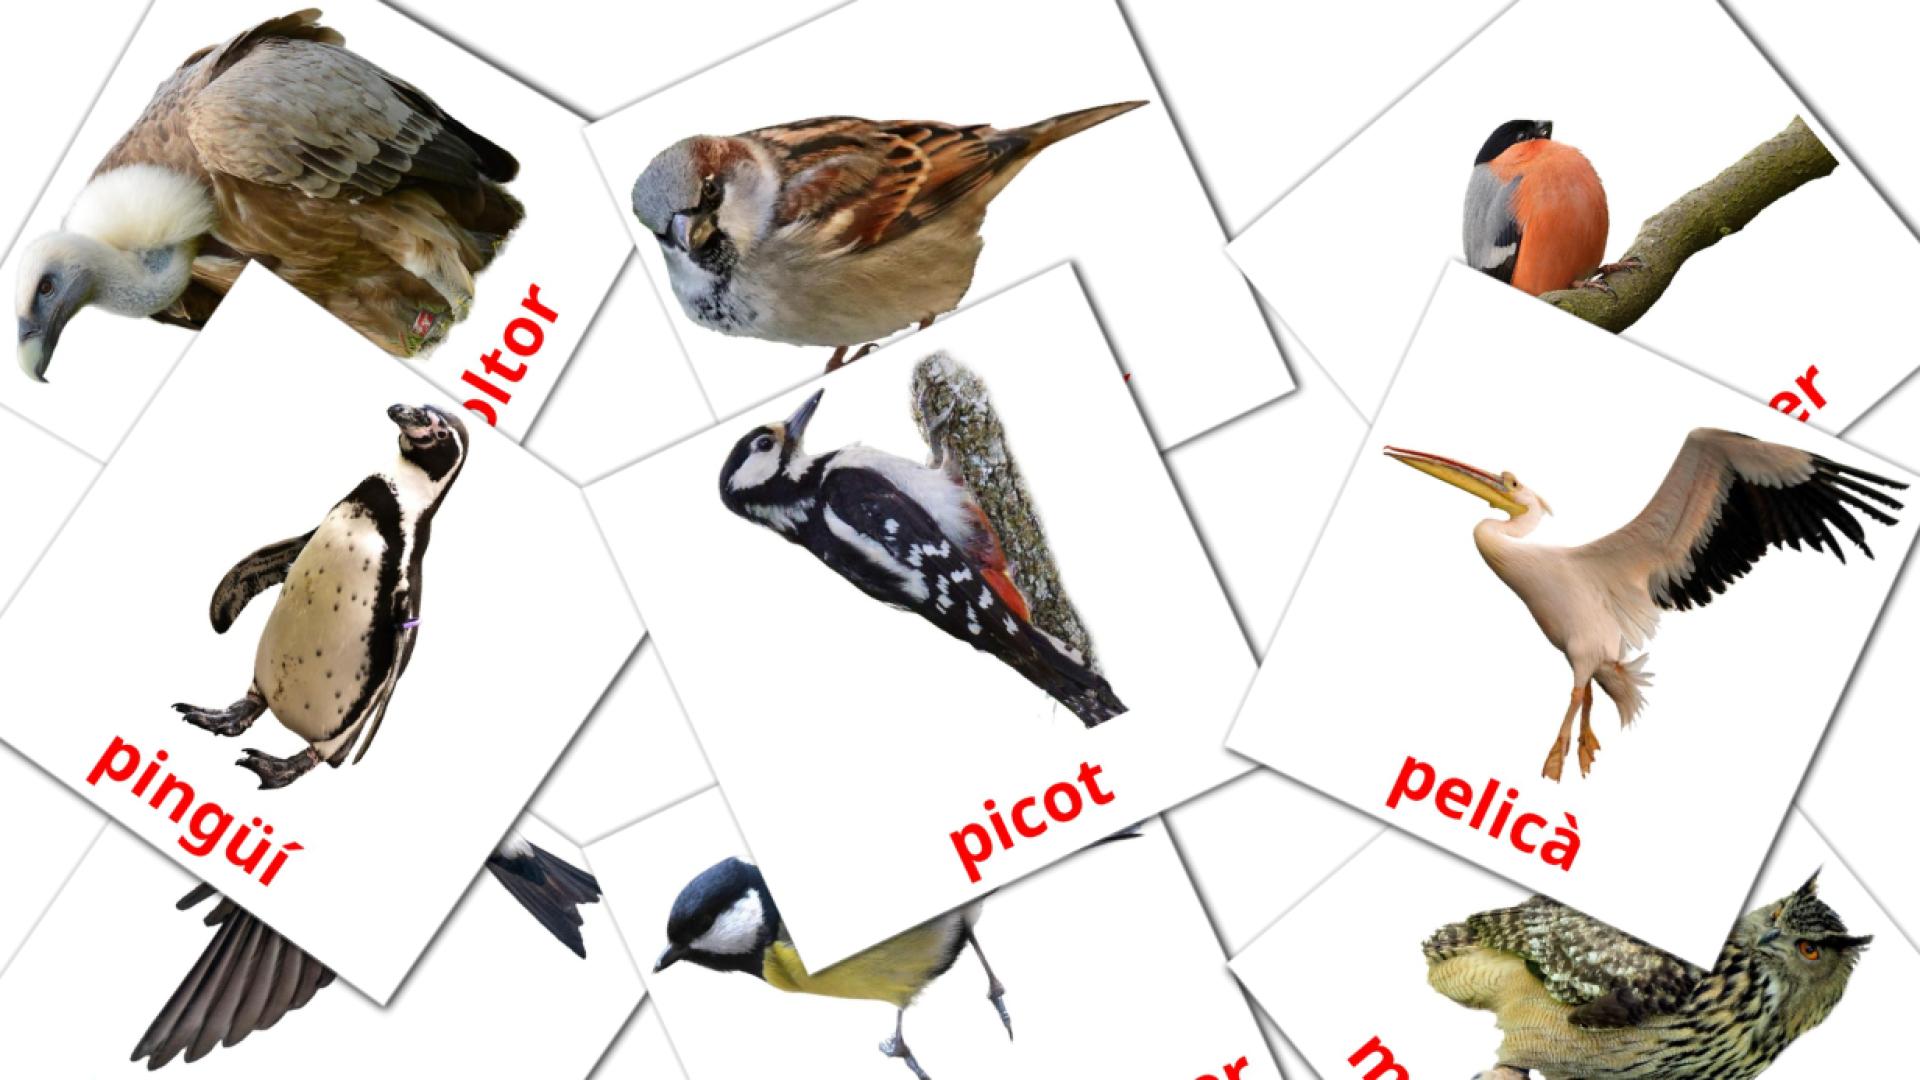 Ocells catalaans woordenschat flashcards